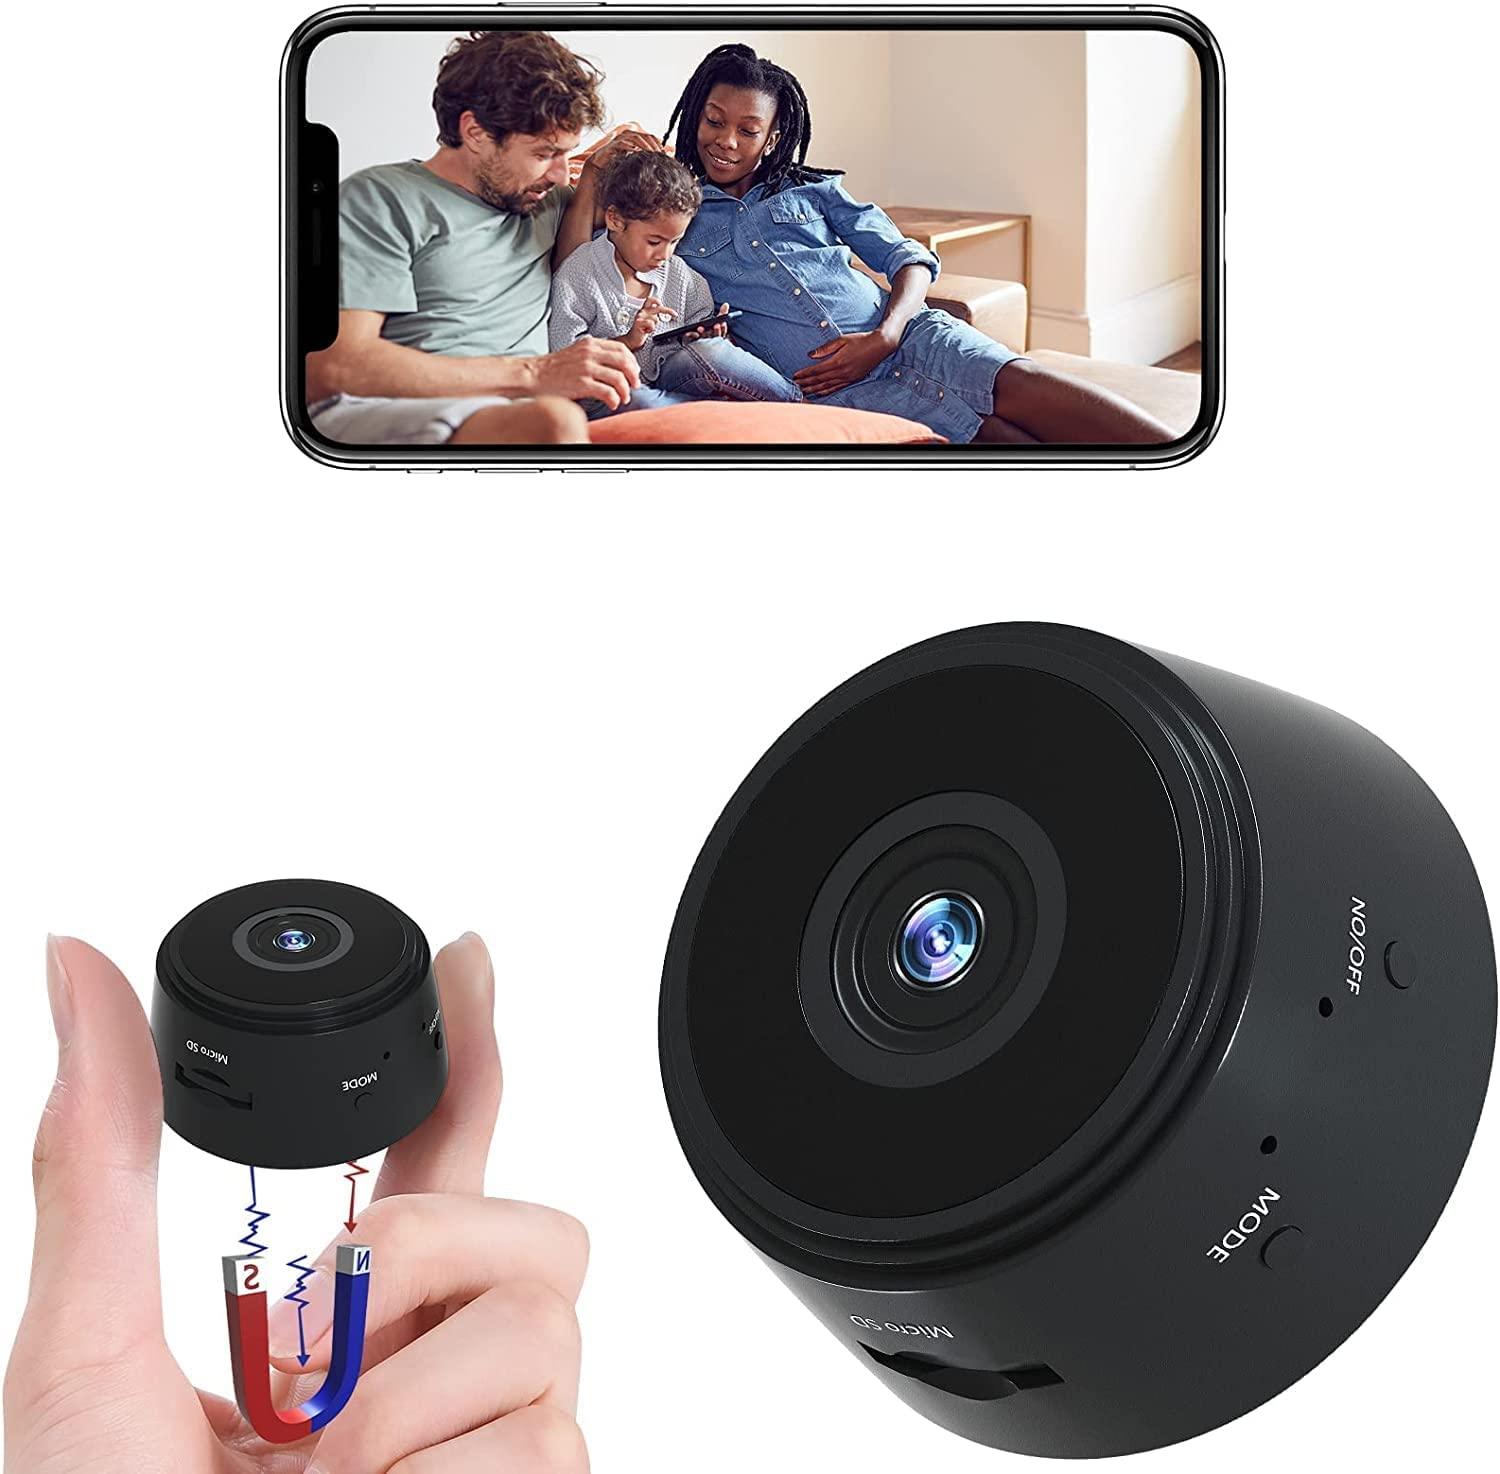 Mini caméra de véhicule sans fil, caméra de surveillance vidéo